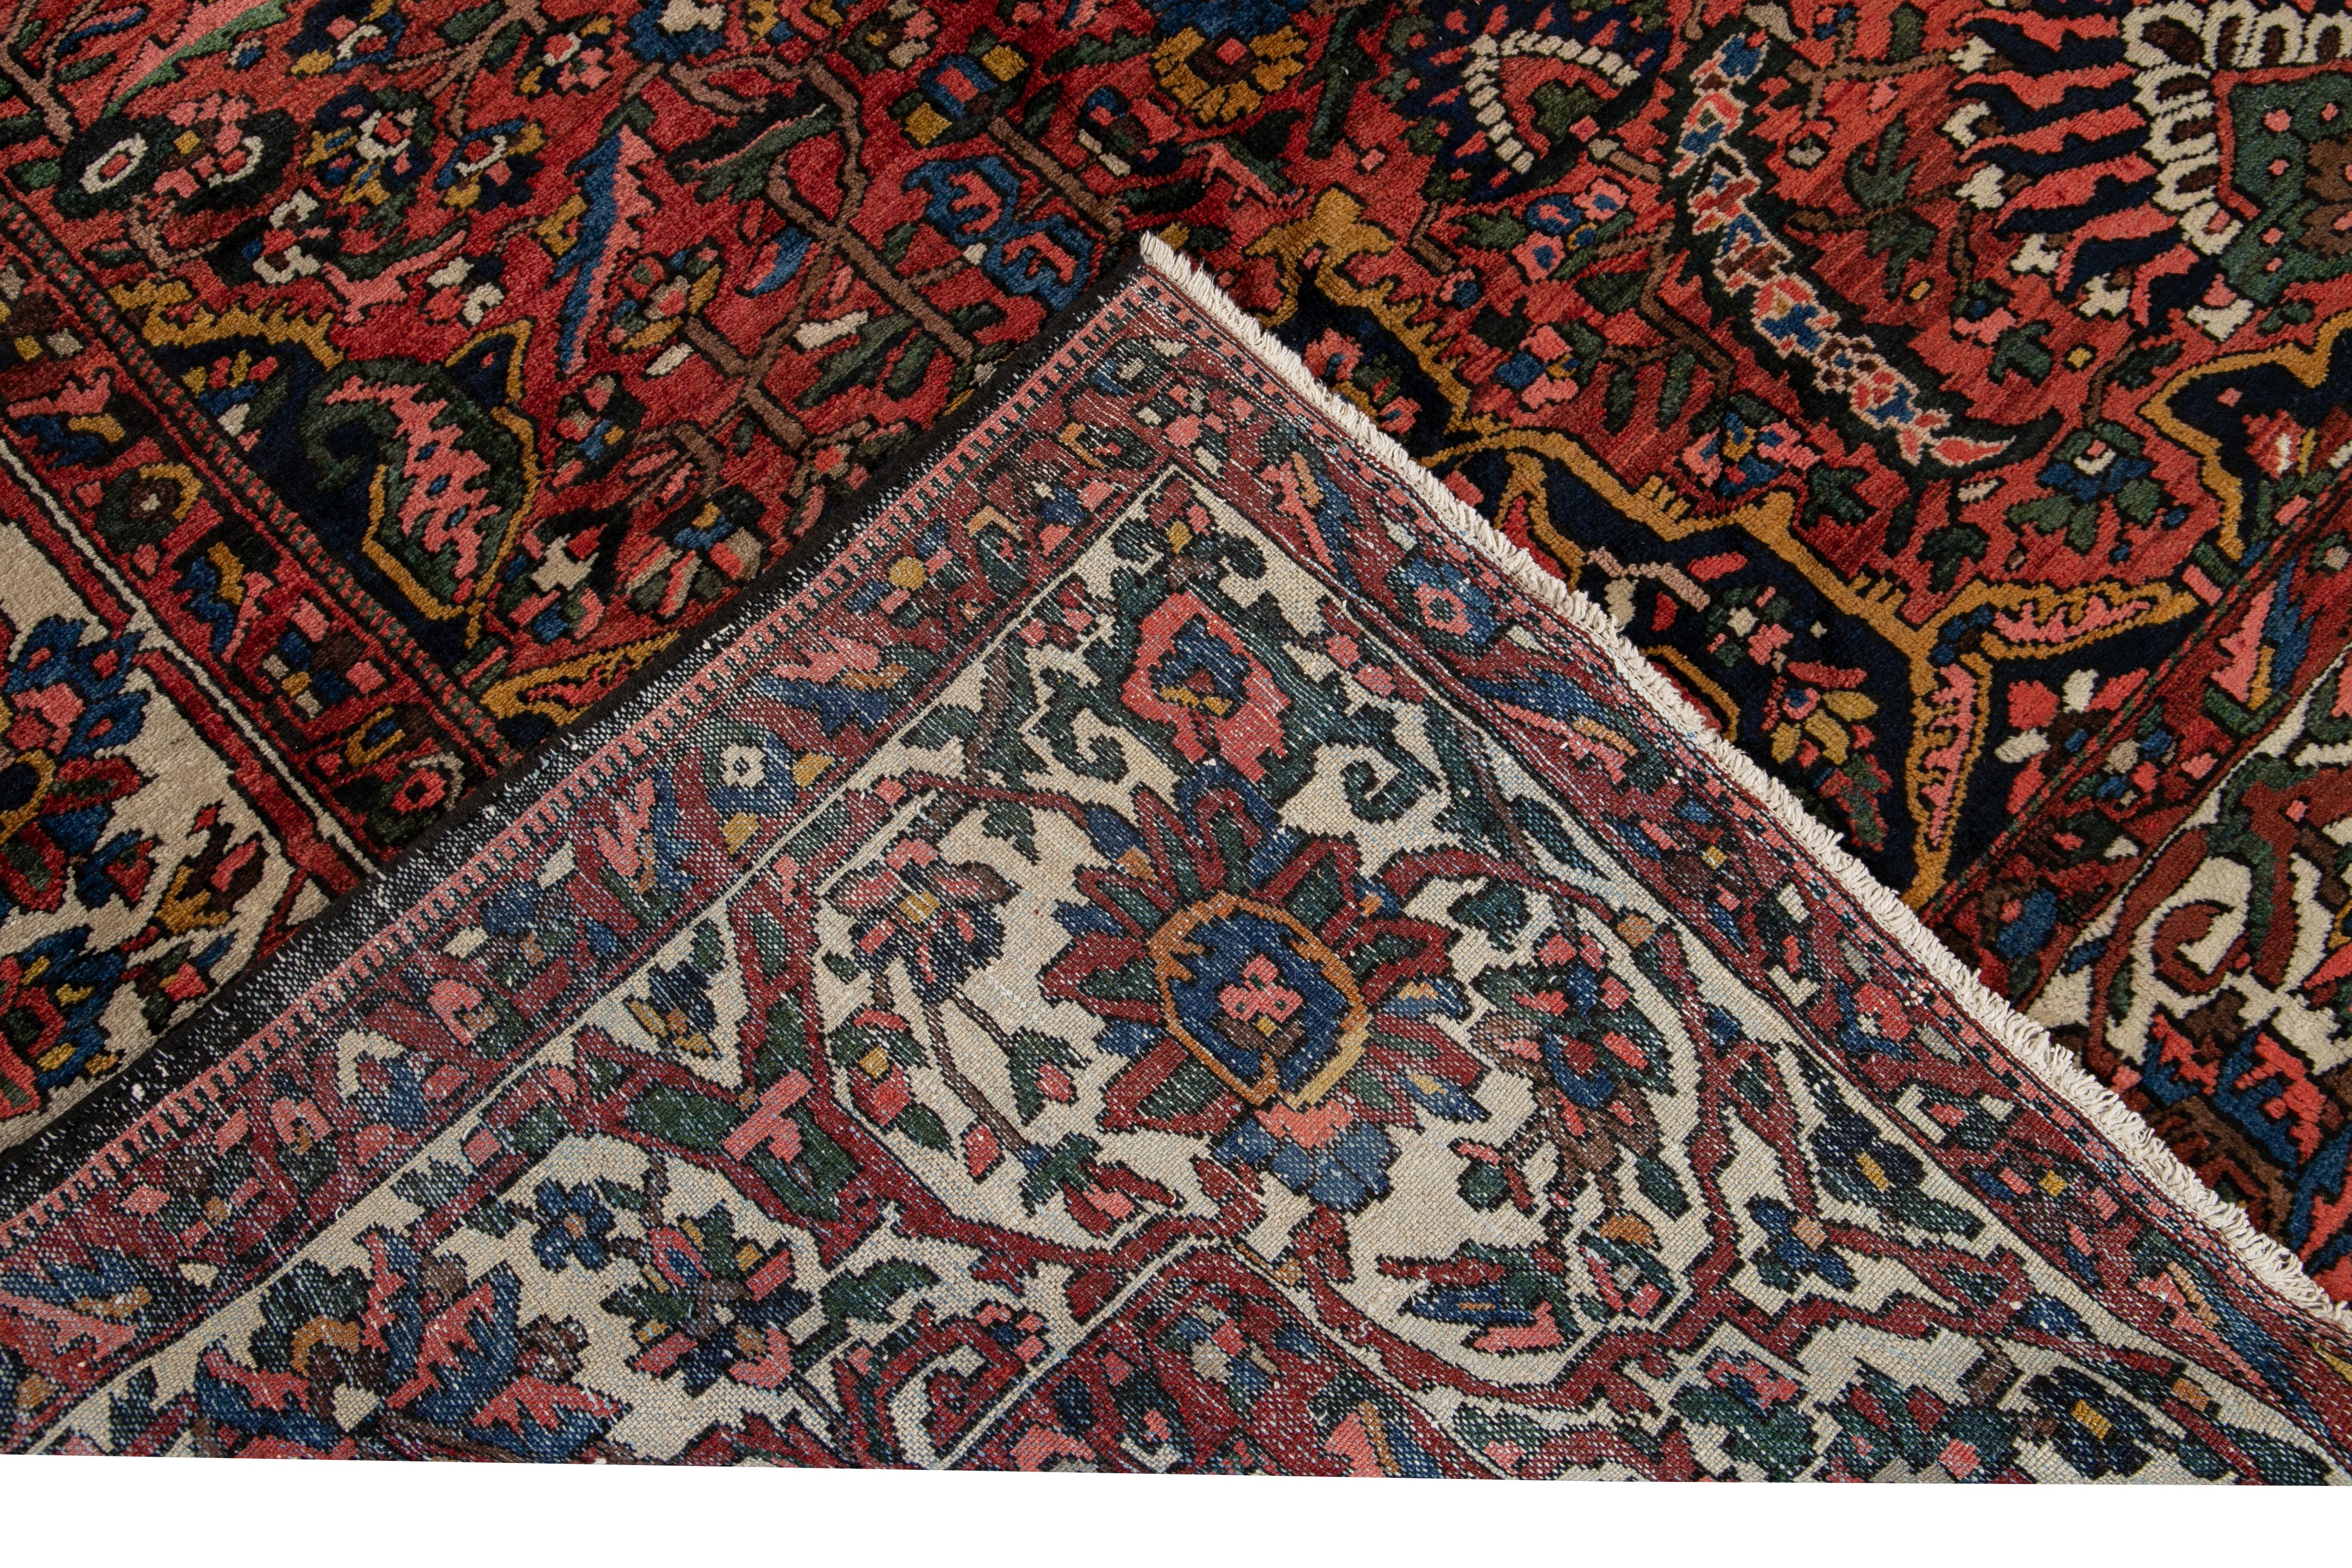 Magnifique tapis ancien surdimensionné en laine Bakhtiari nouée à la main avec un champ rouille. Ce tapis Bakhtiari a un cadre ivoire et des accents multicolores dans un magnifique médaillon central à motif floral Botanica.

Ce tapis mesure 11'6